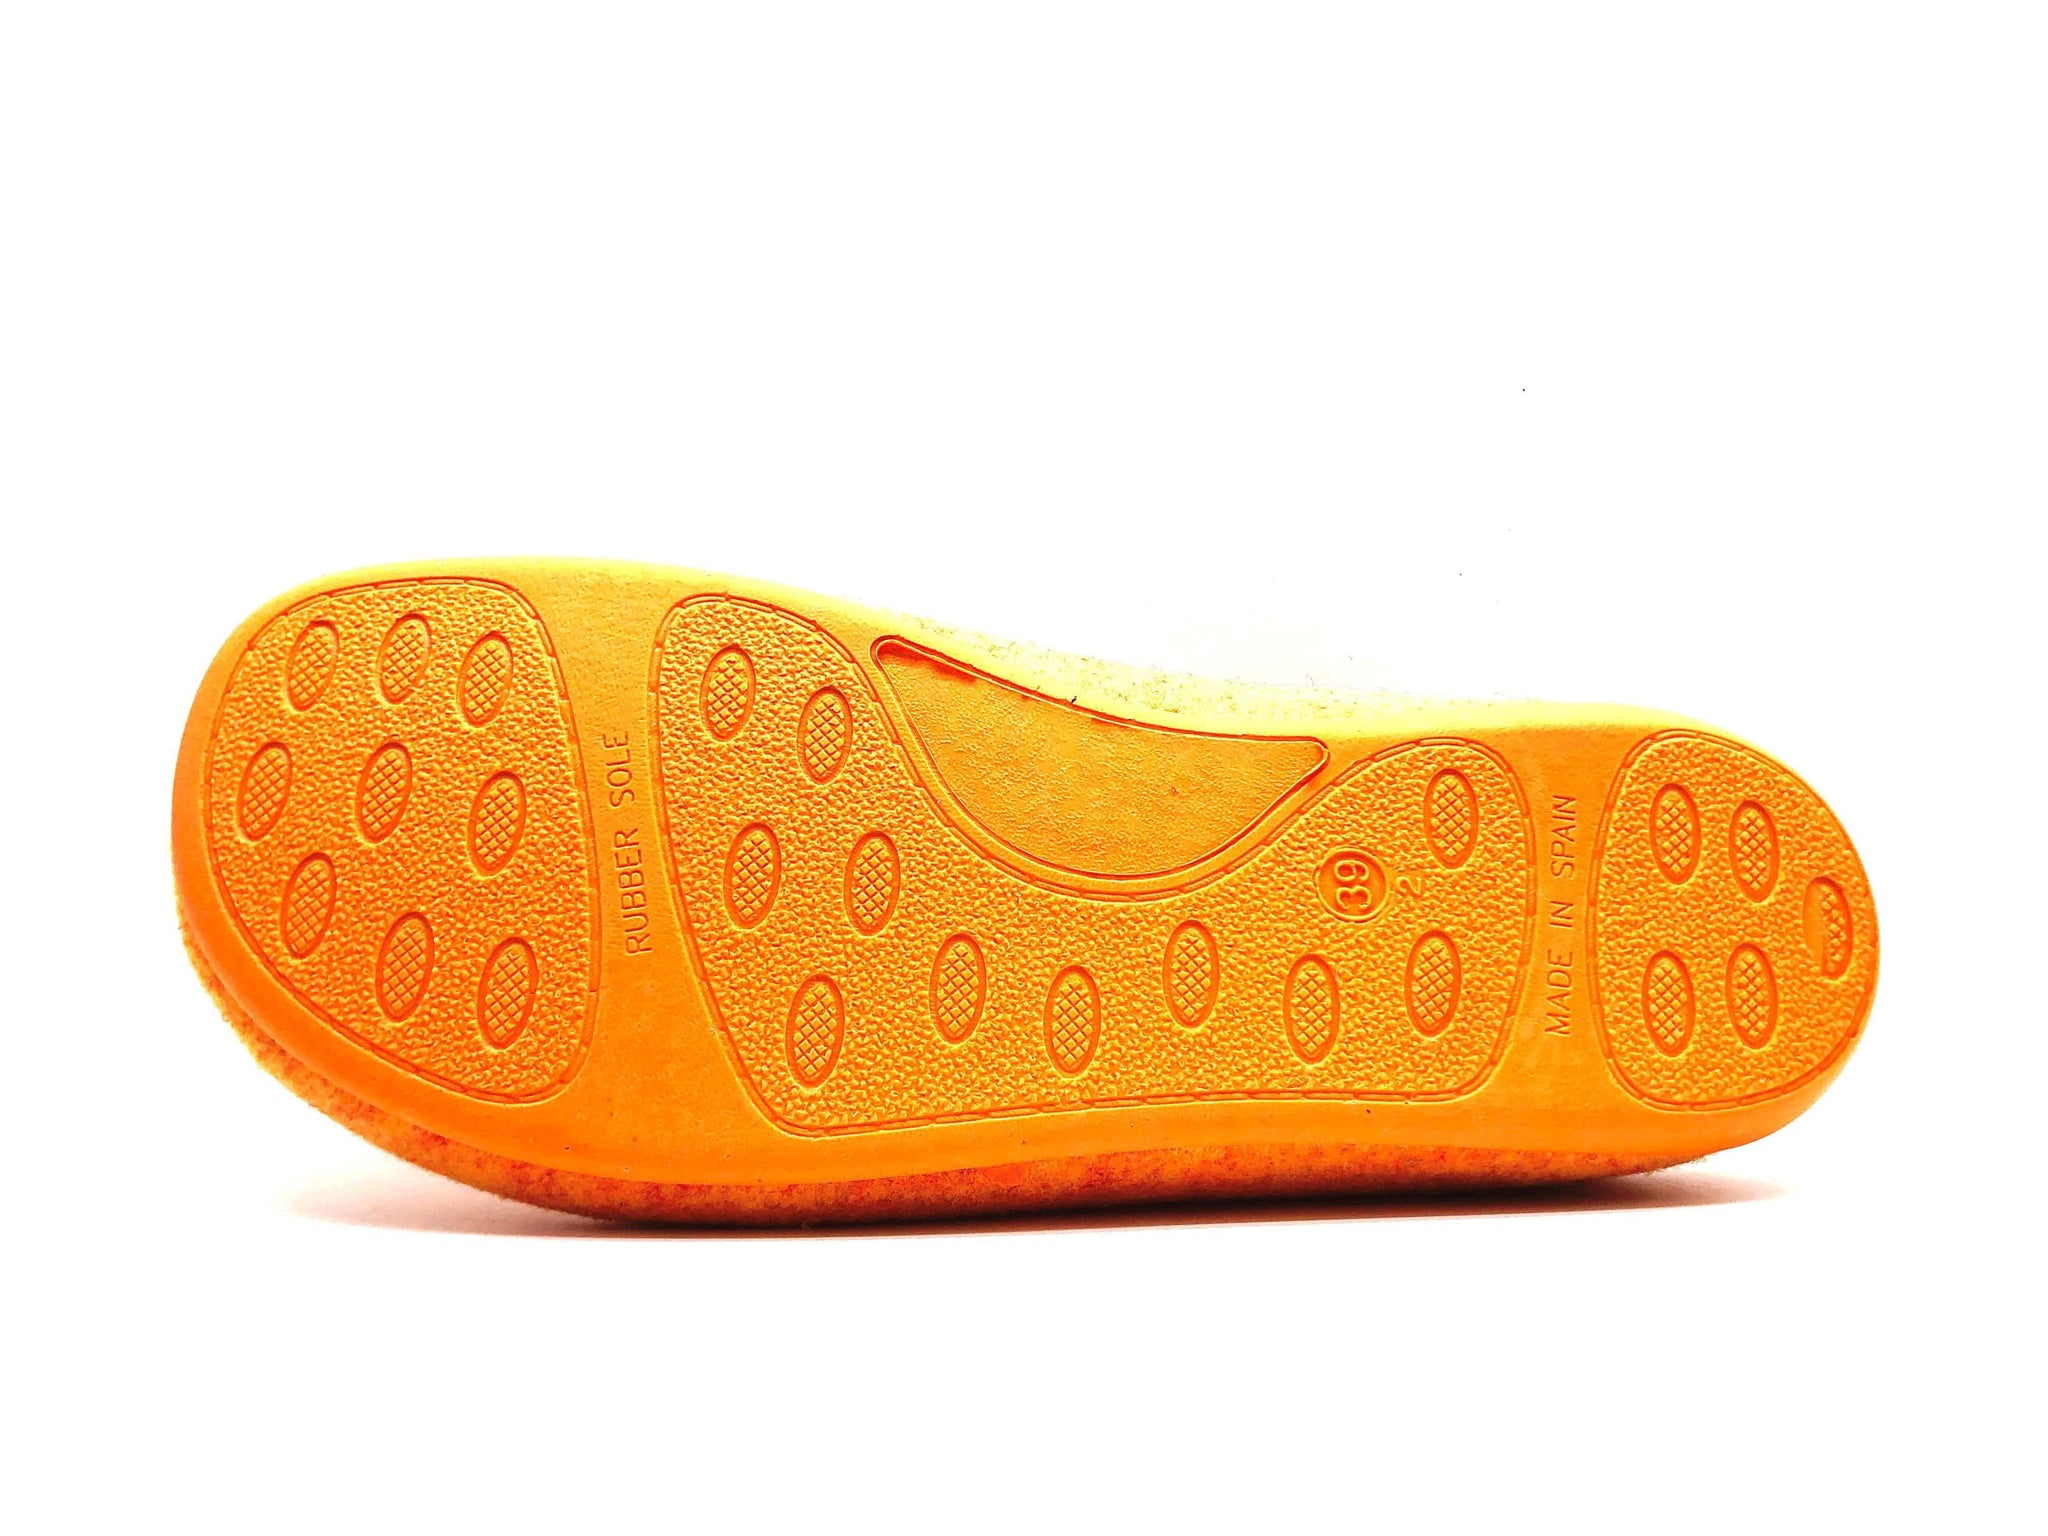 NAT 2 calçat thies 1856 ® Sabatilles PET reciclades taronja vegana (P / M) moda sostenible moda ètica